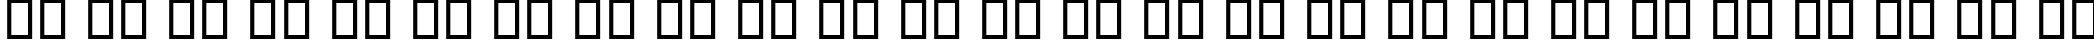 Пример написания английского алфавита шрифтом B Compset Bold